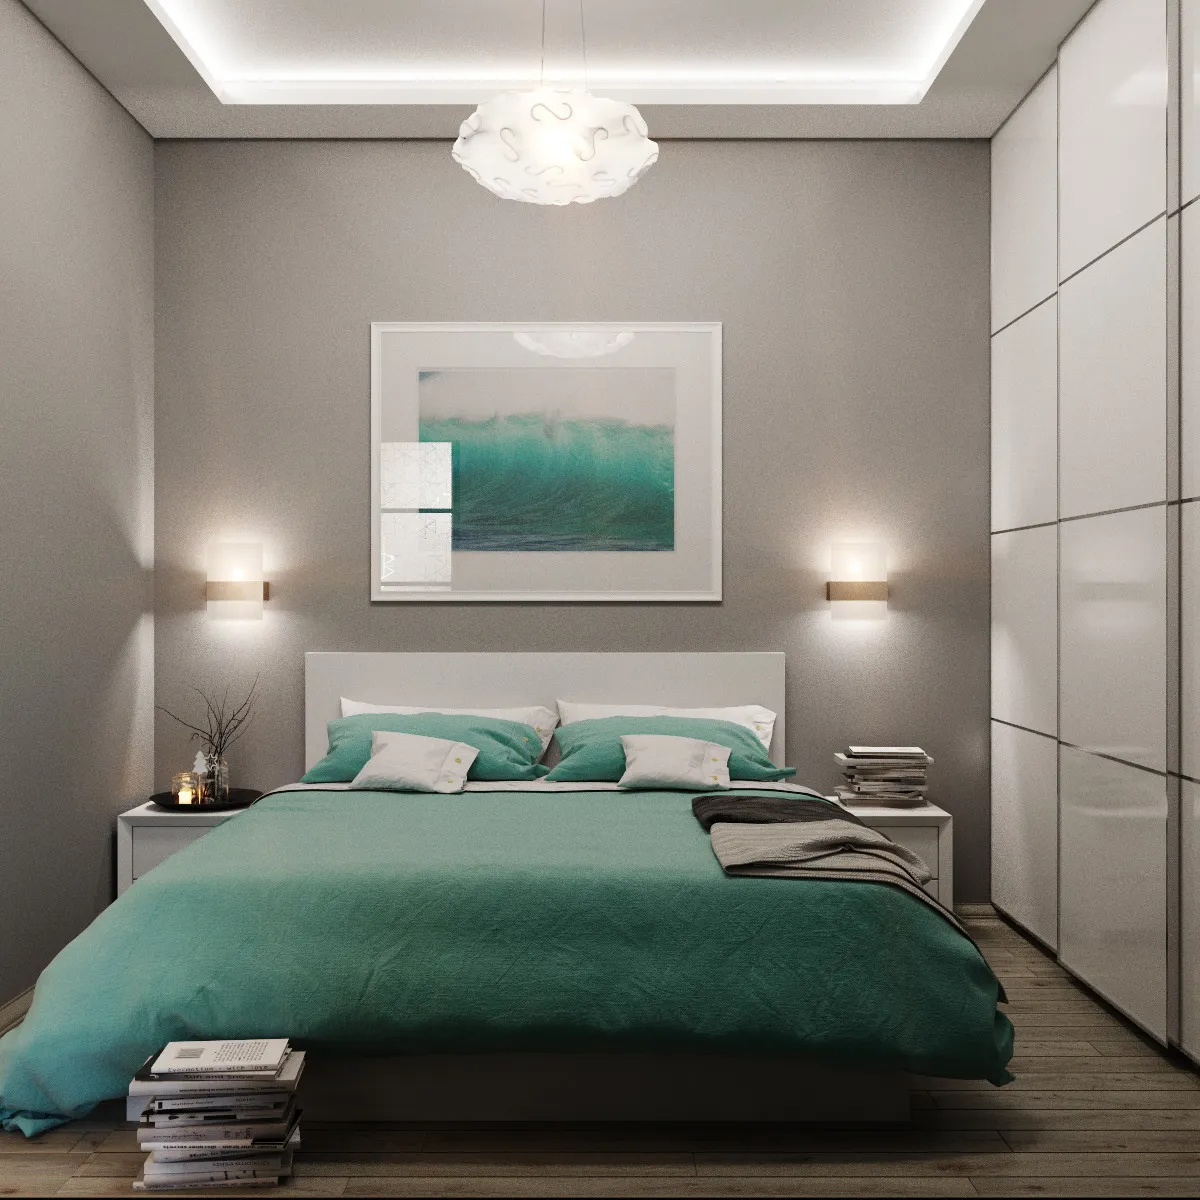 Картины для спальни: фото стильных решений в дизайне интерьера